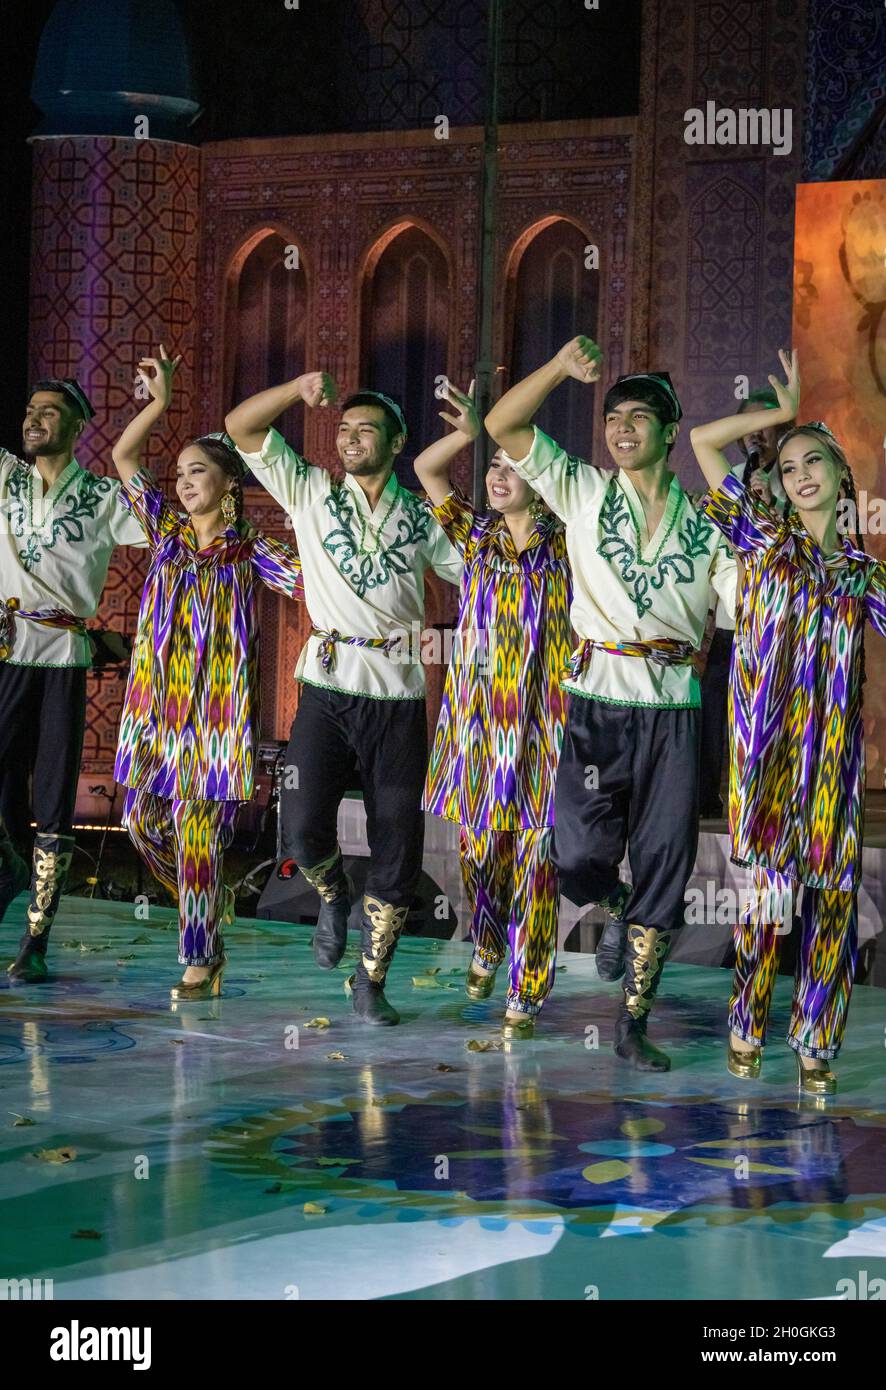 Des danseurs dansant des danses traditionnelles pour les délégués de la conférence internationale lors d'un dîner de gala, Tachkent, Ouzbékistan Banque D'Images